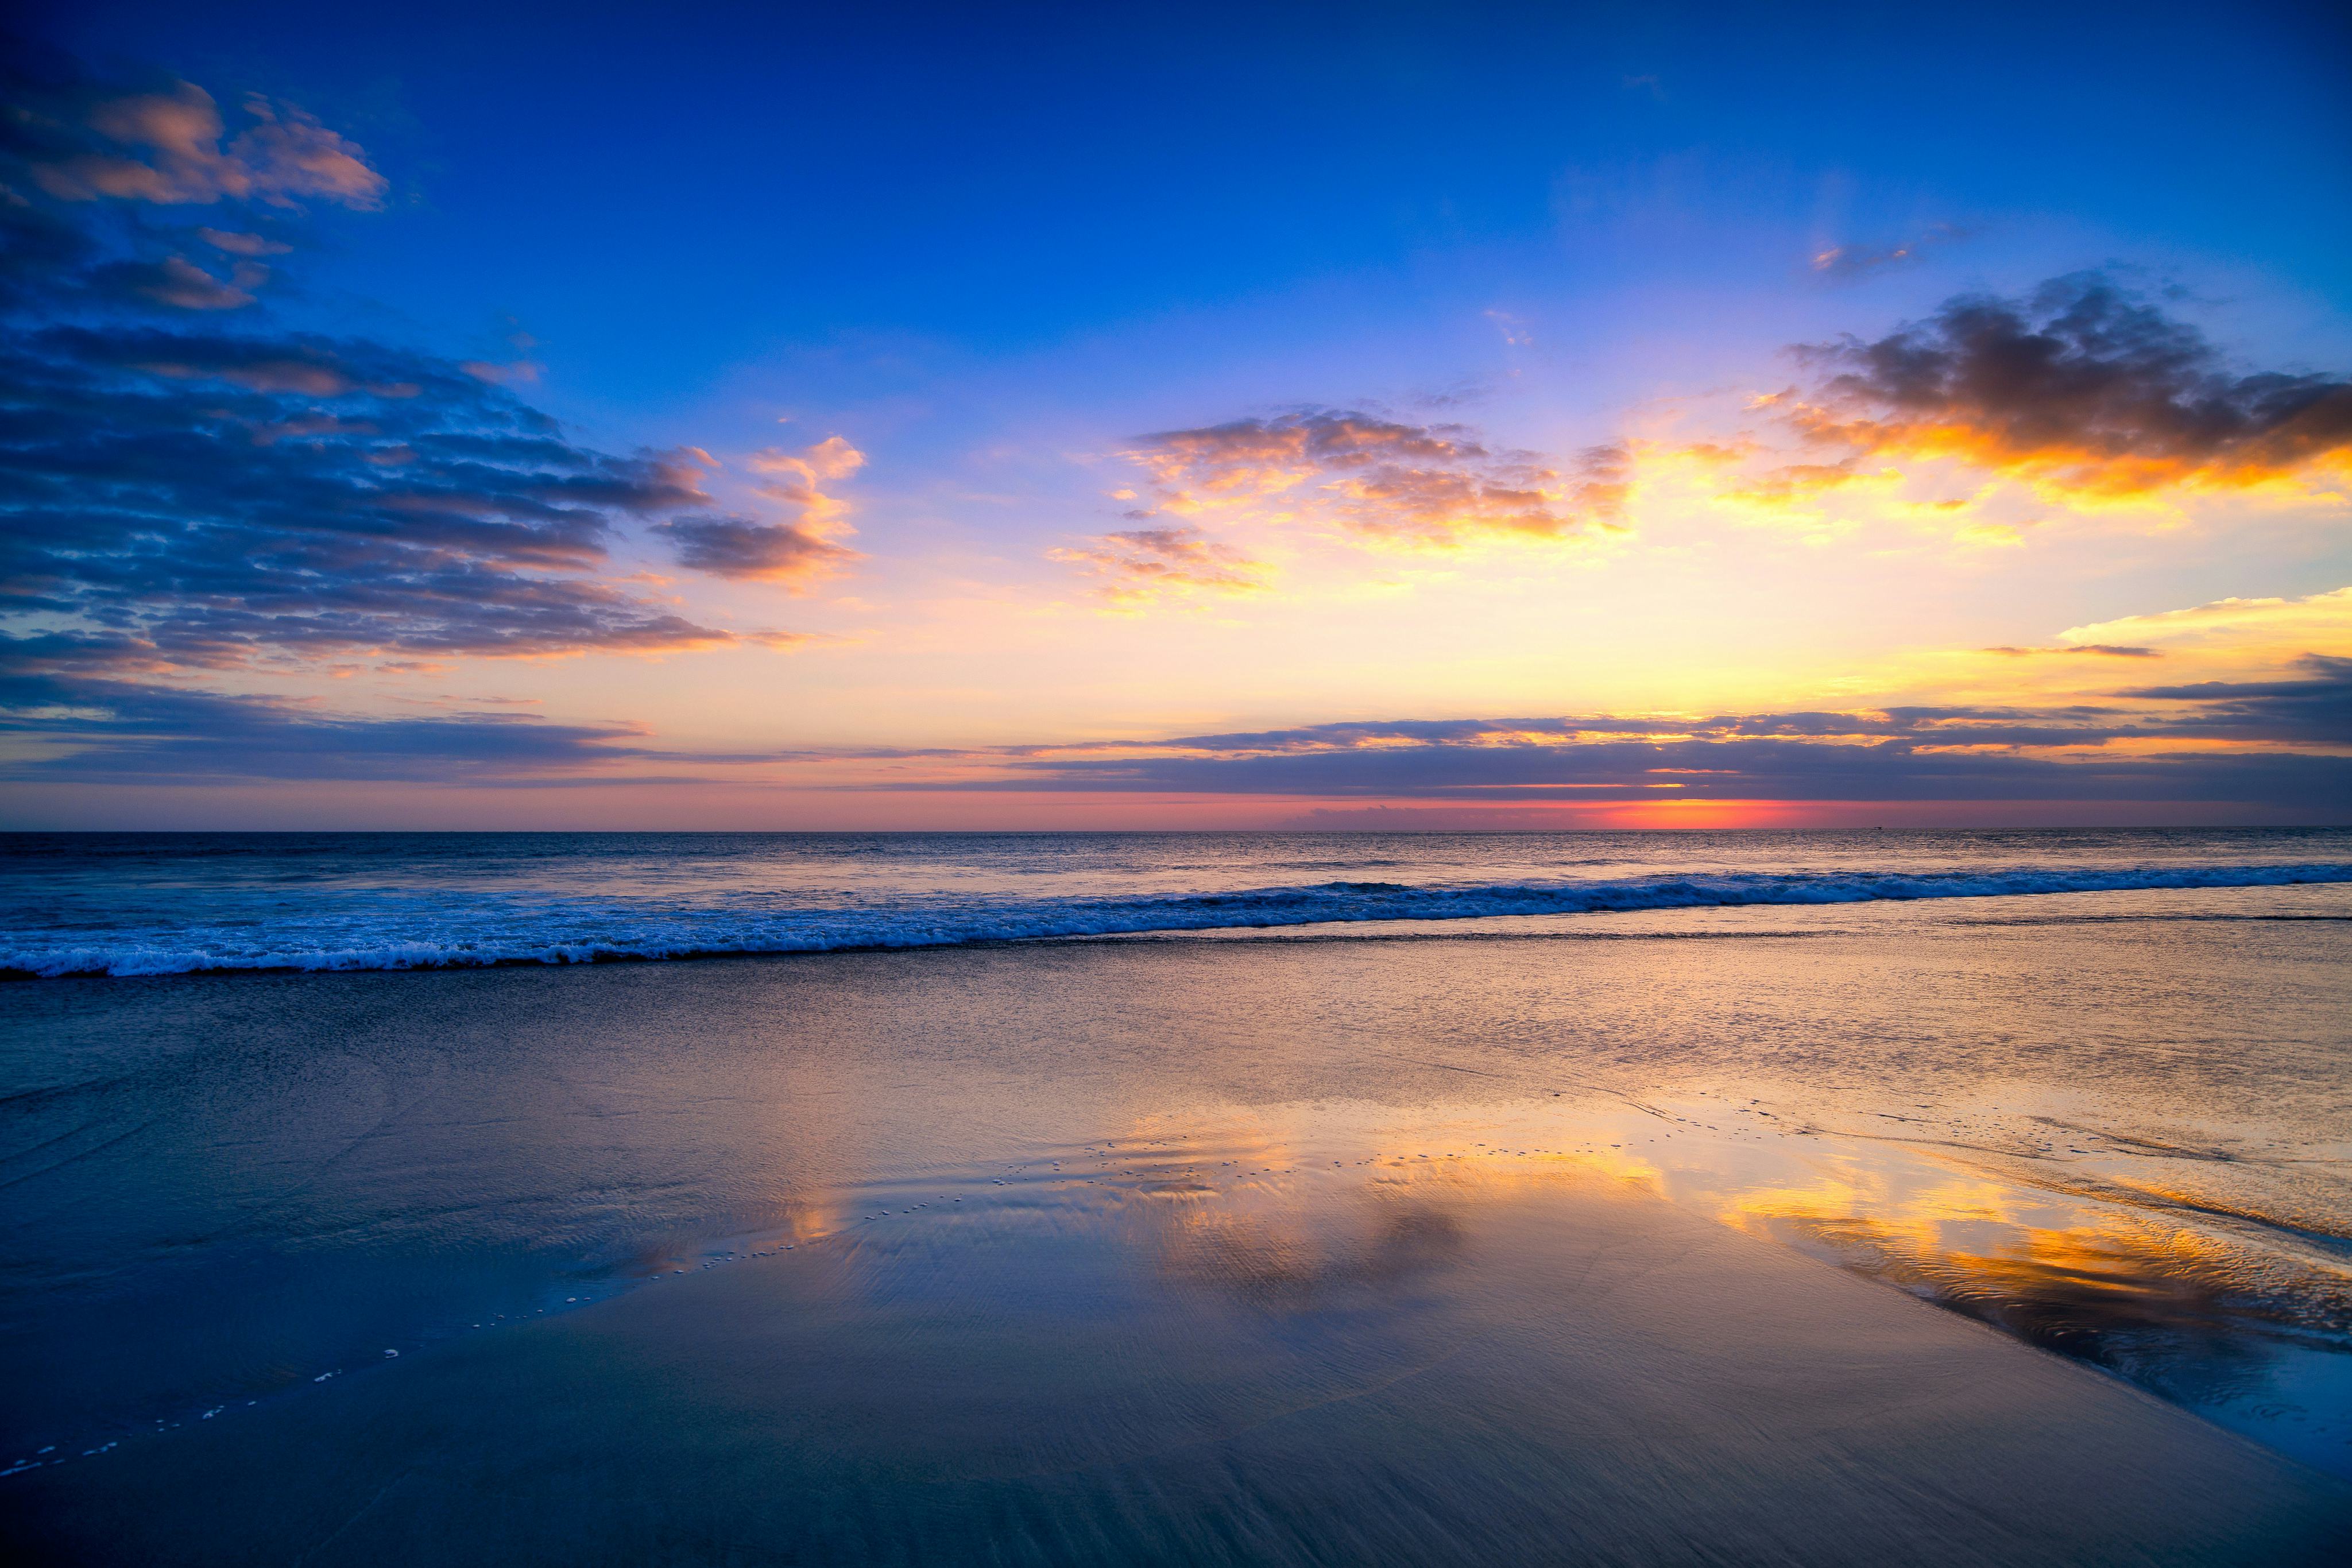 Sunset at Seminyak beach in Bali, Indonesia